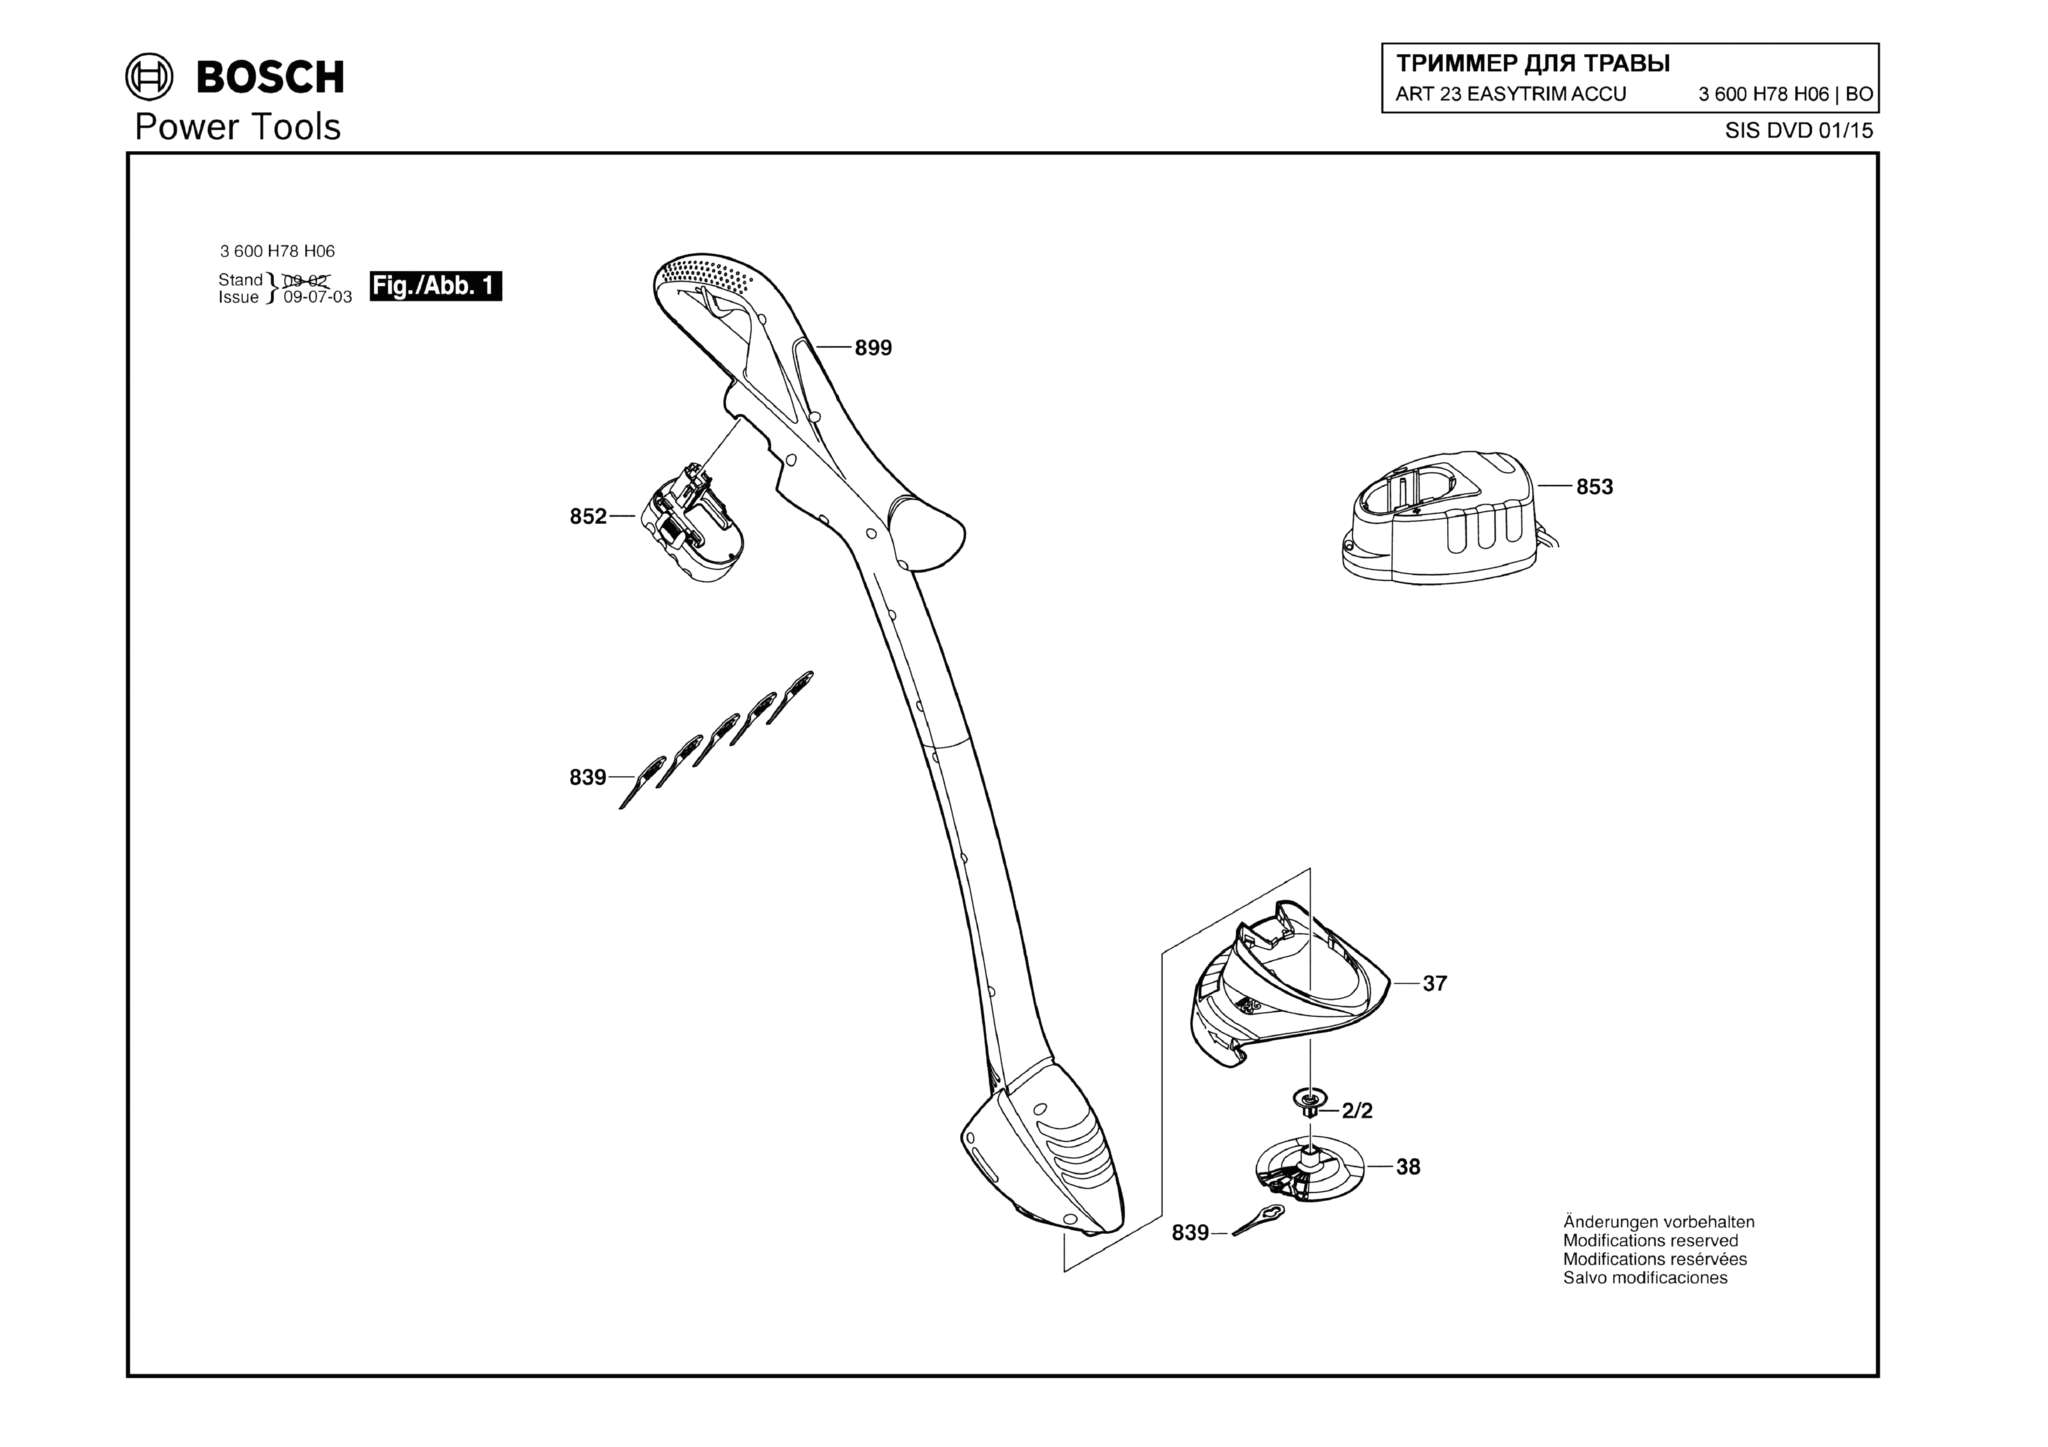 Запчасти, схема и деталировка Bosch ART 23 EASYTRIM ACCU (ТИП 3600H78H06)